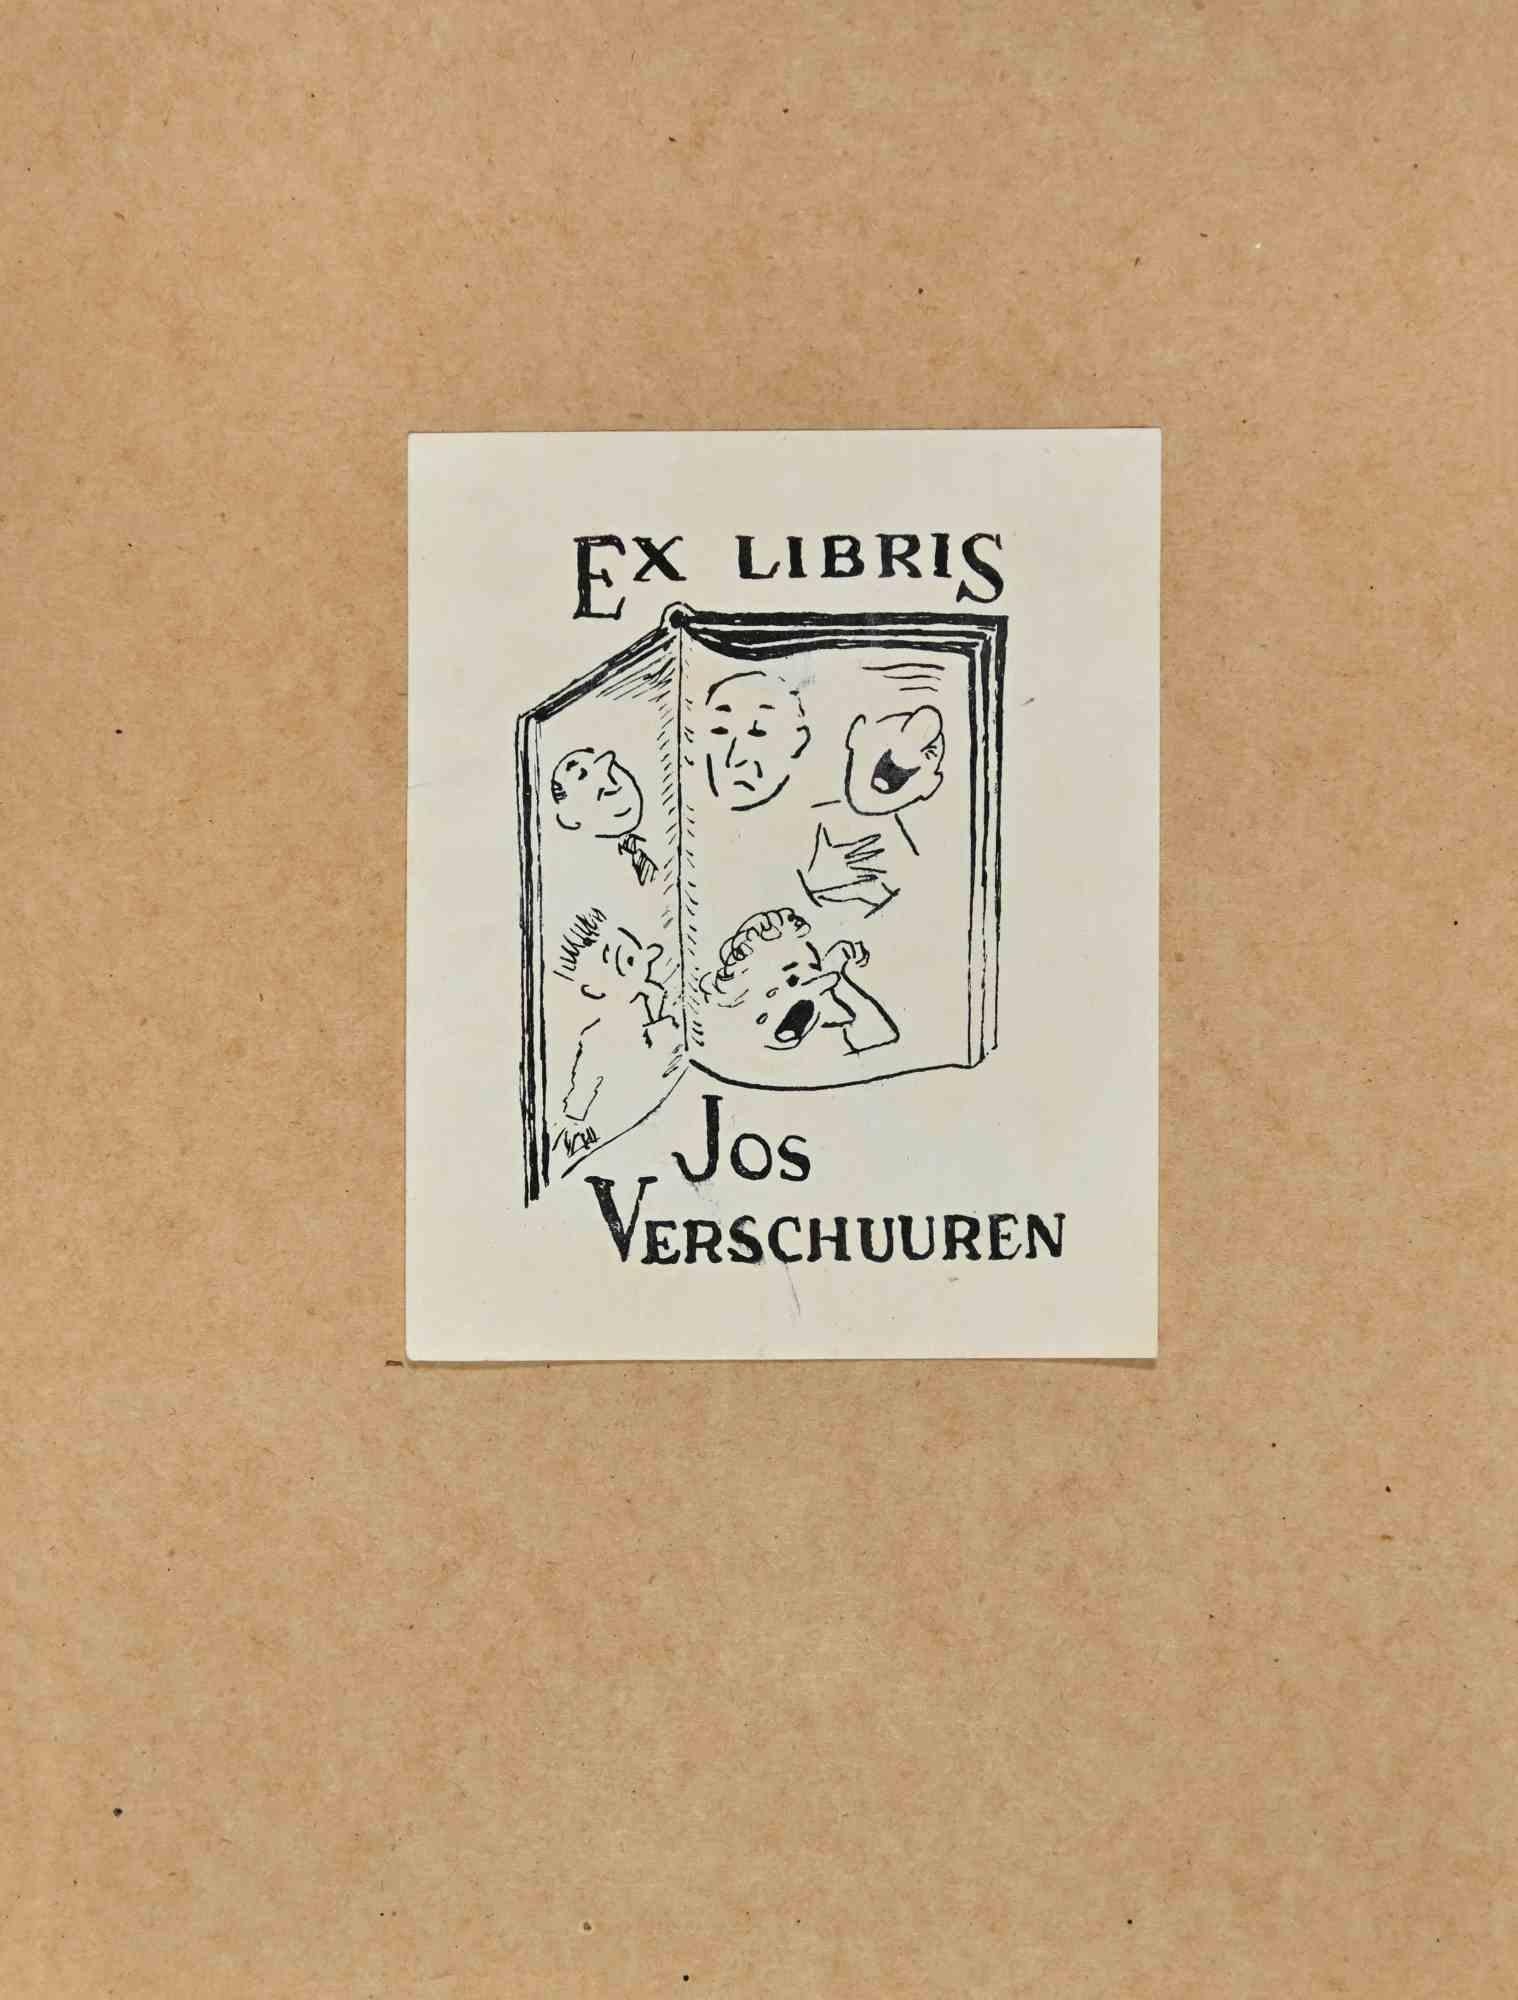  Ex Libris - Jos Verschuuren - Mid 20th Century